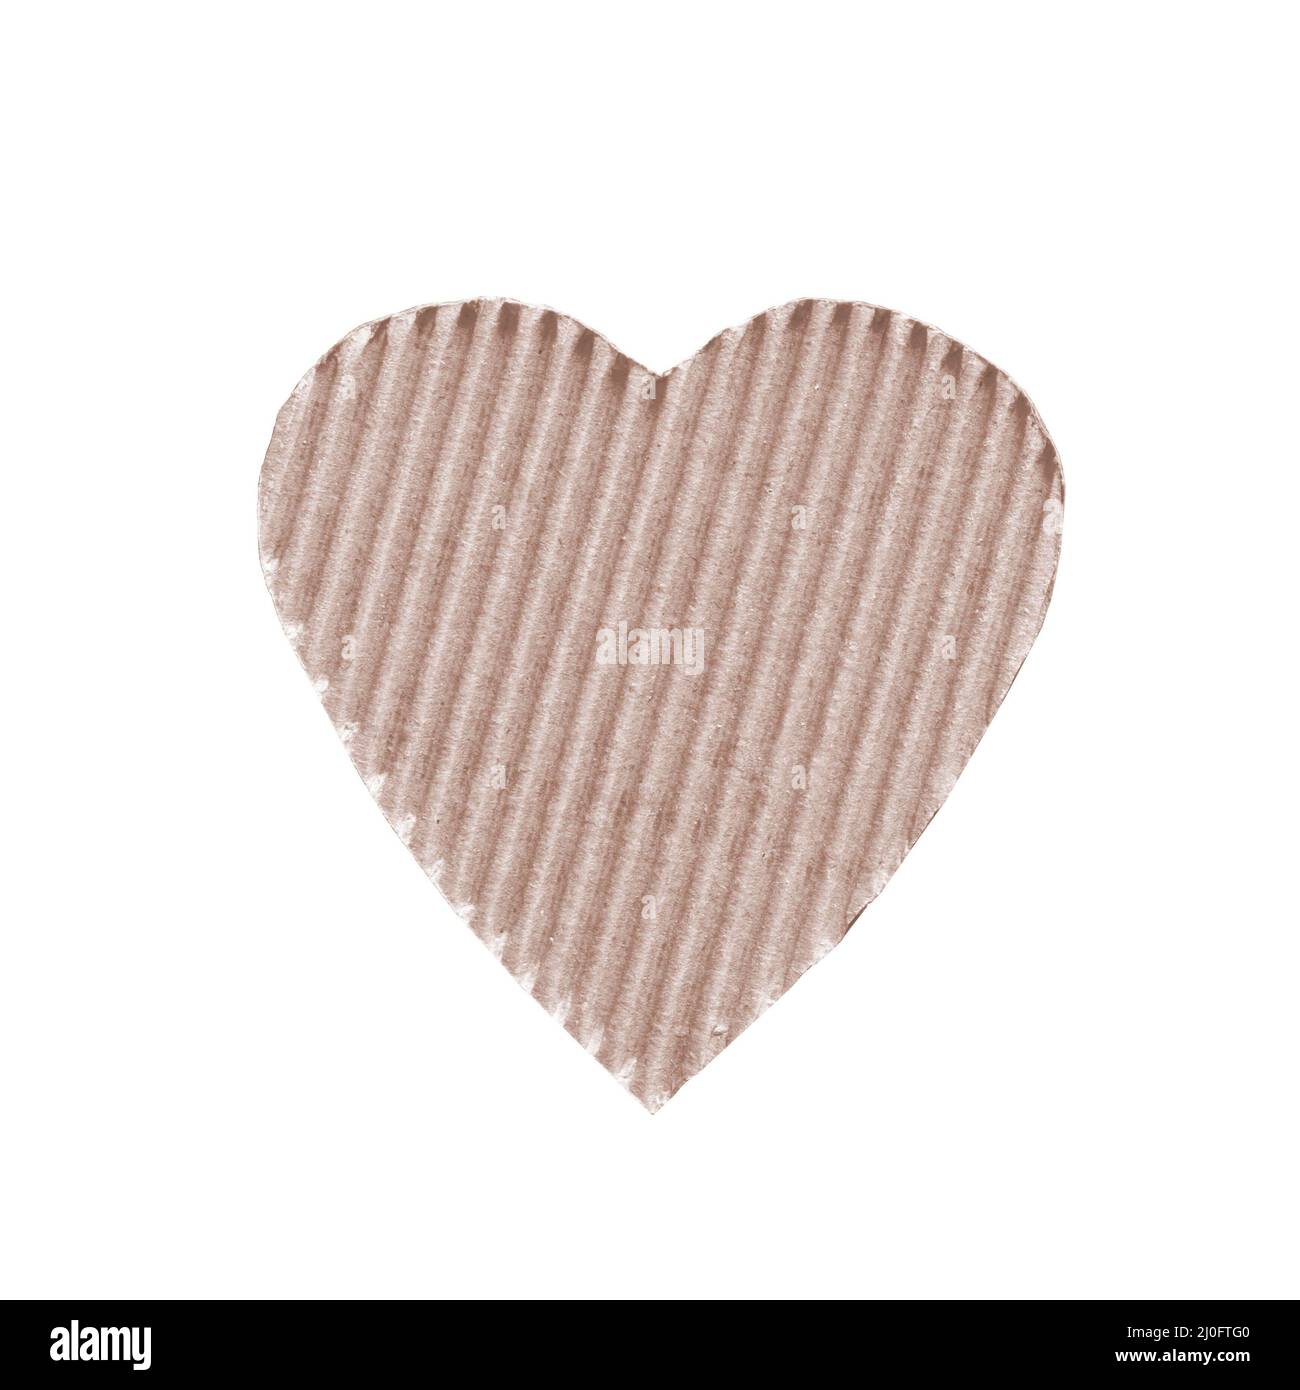 Il simbolo di un cuore impostare colore champagne vela taglio di cartone ondulato isolato su sfondo bianco Foto Stock